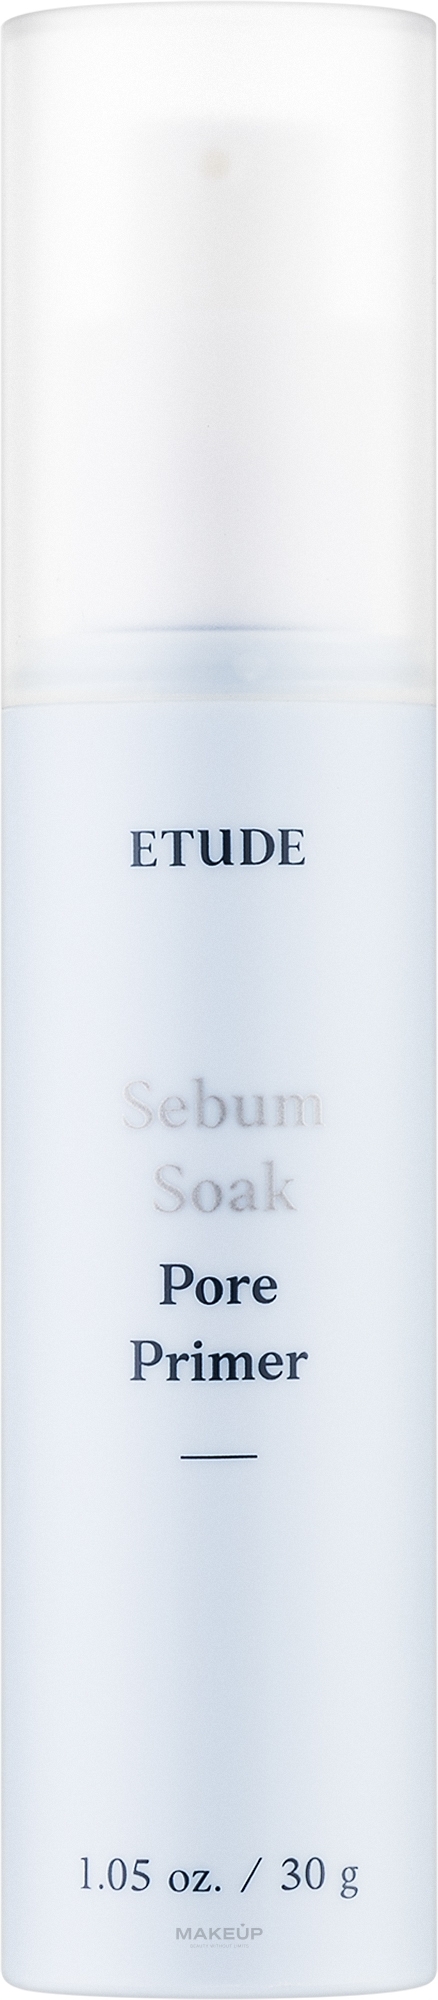 Праймер для лица - Etude House Sebum Soak Pore Primer — фото 25g